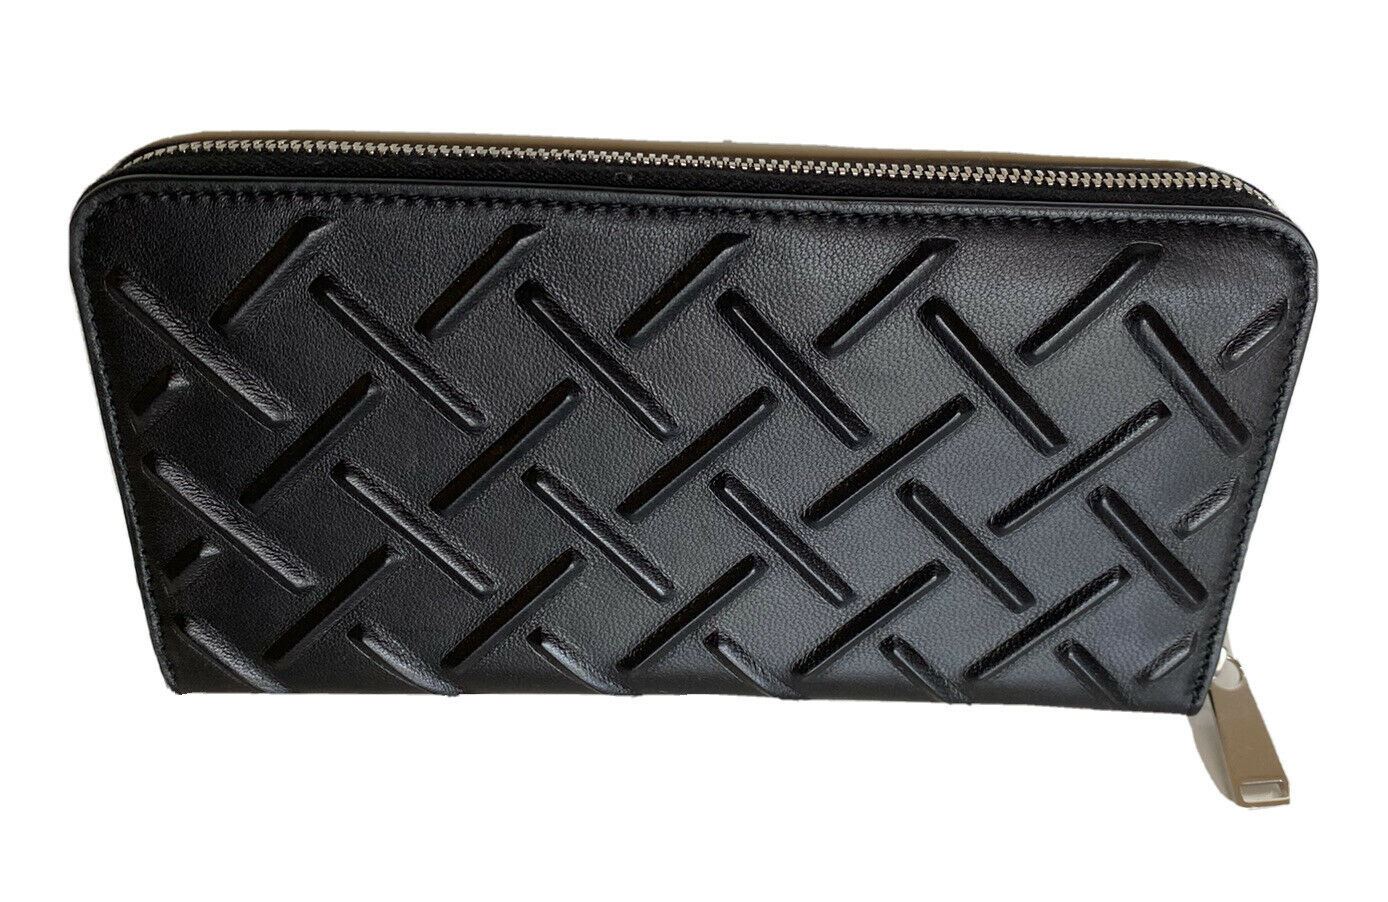 NWT $740 Bottega Veneta Nappa19 Zip Around Leather Wallet Black 593217 Italy